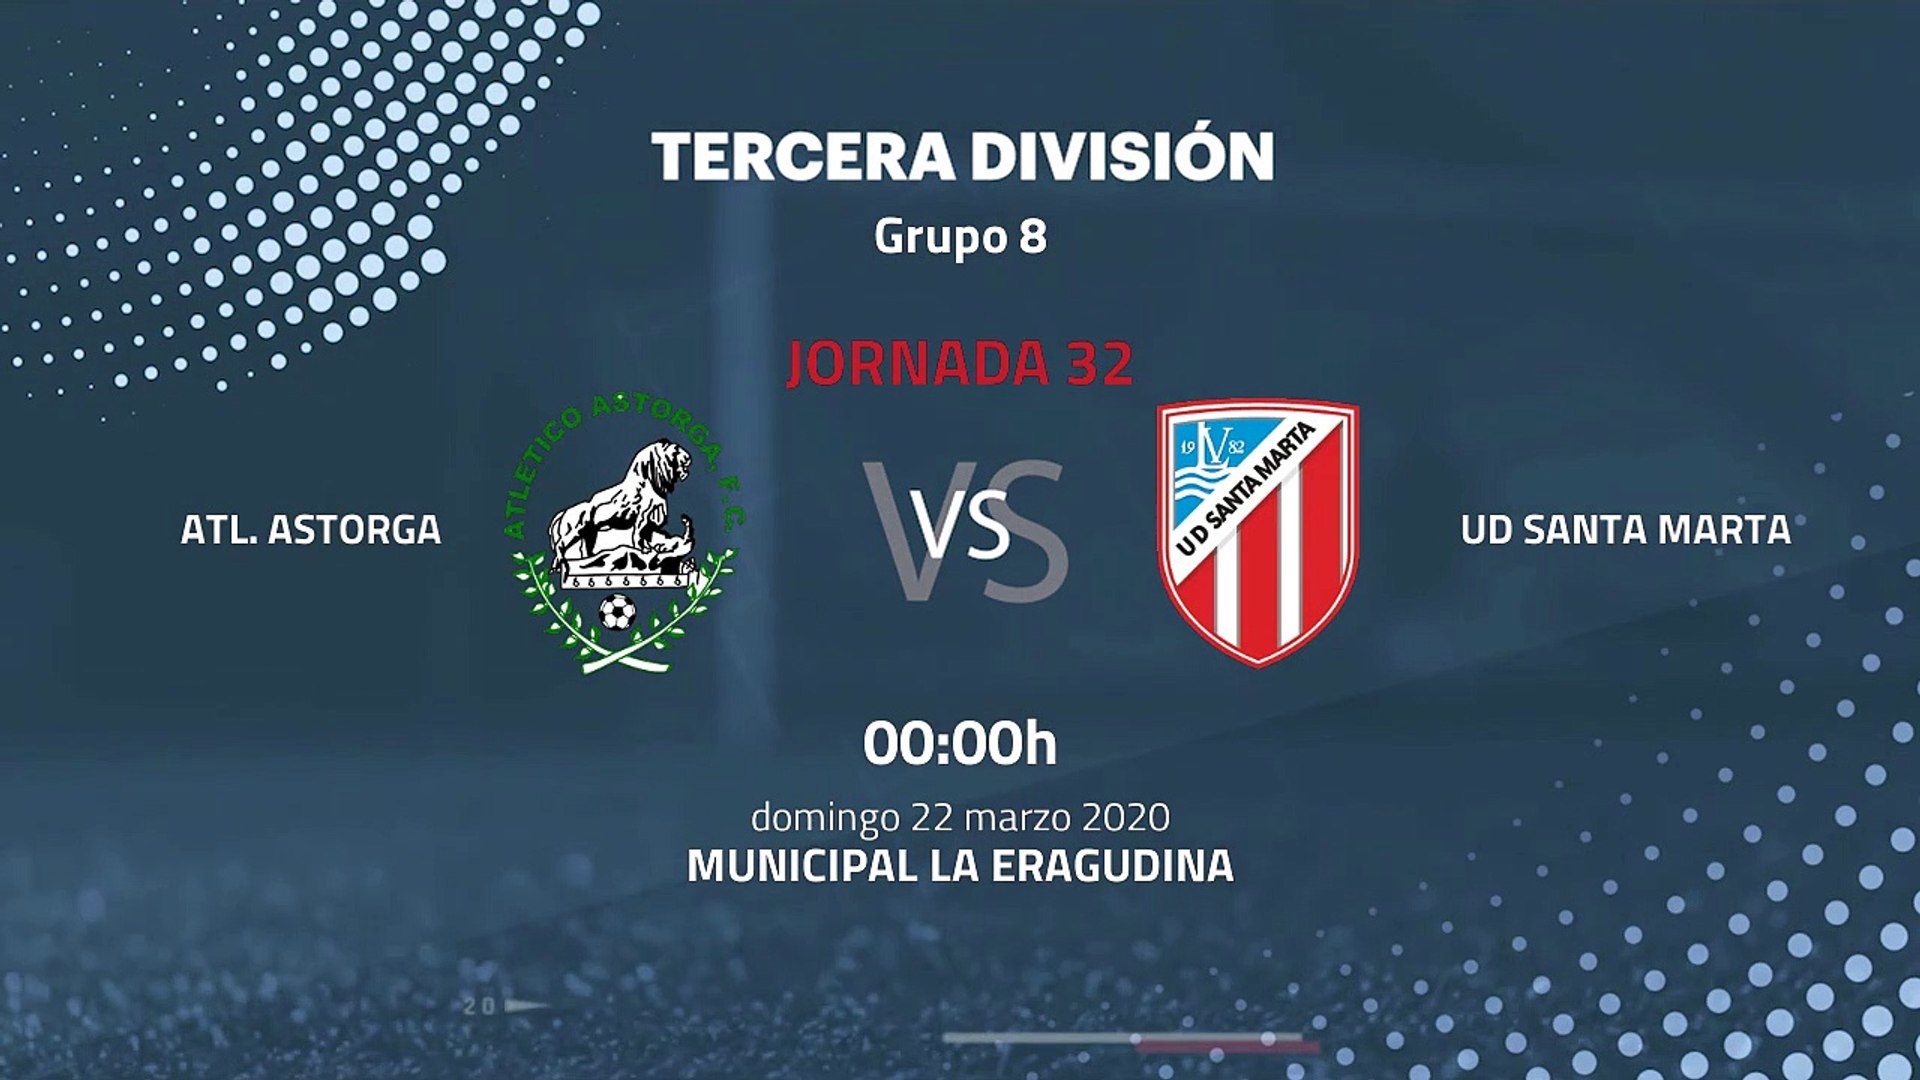 Previa partido entre Atl. Astorga y UD Santa Marta Jornada 32 Tercera División - Vídeo